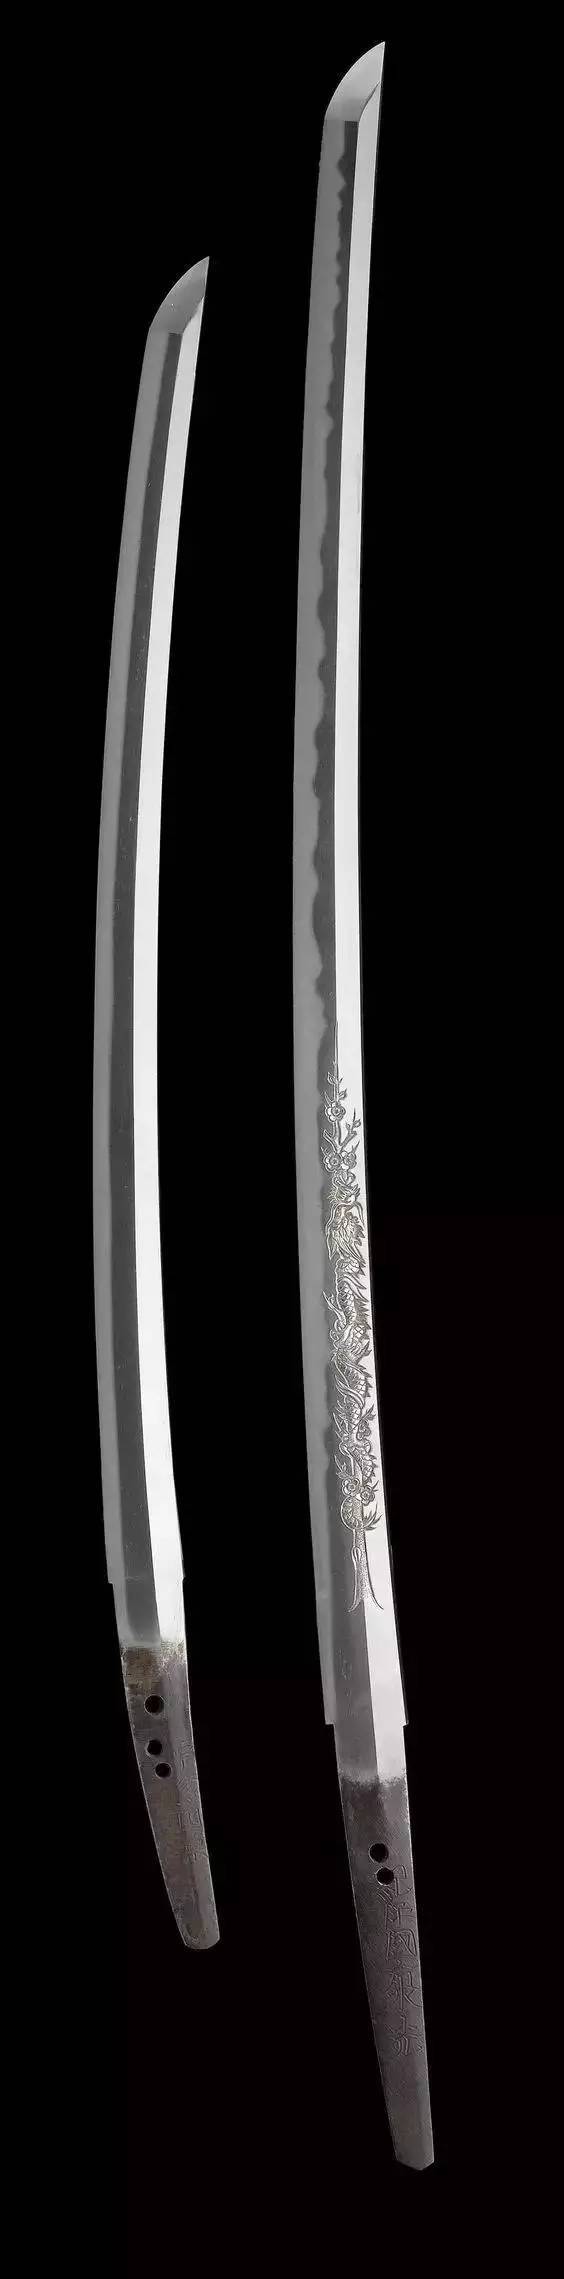 日本镰仓时代末期的大型刀:大太刀,野太刀